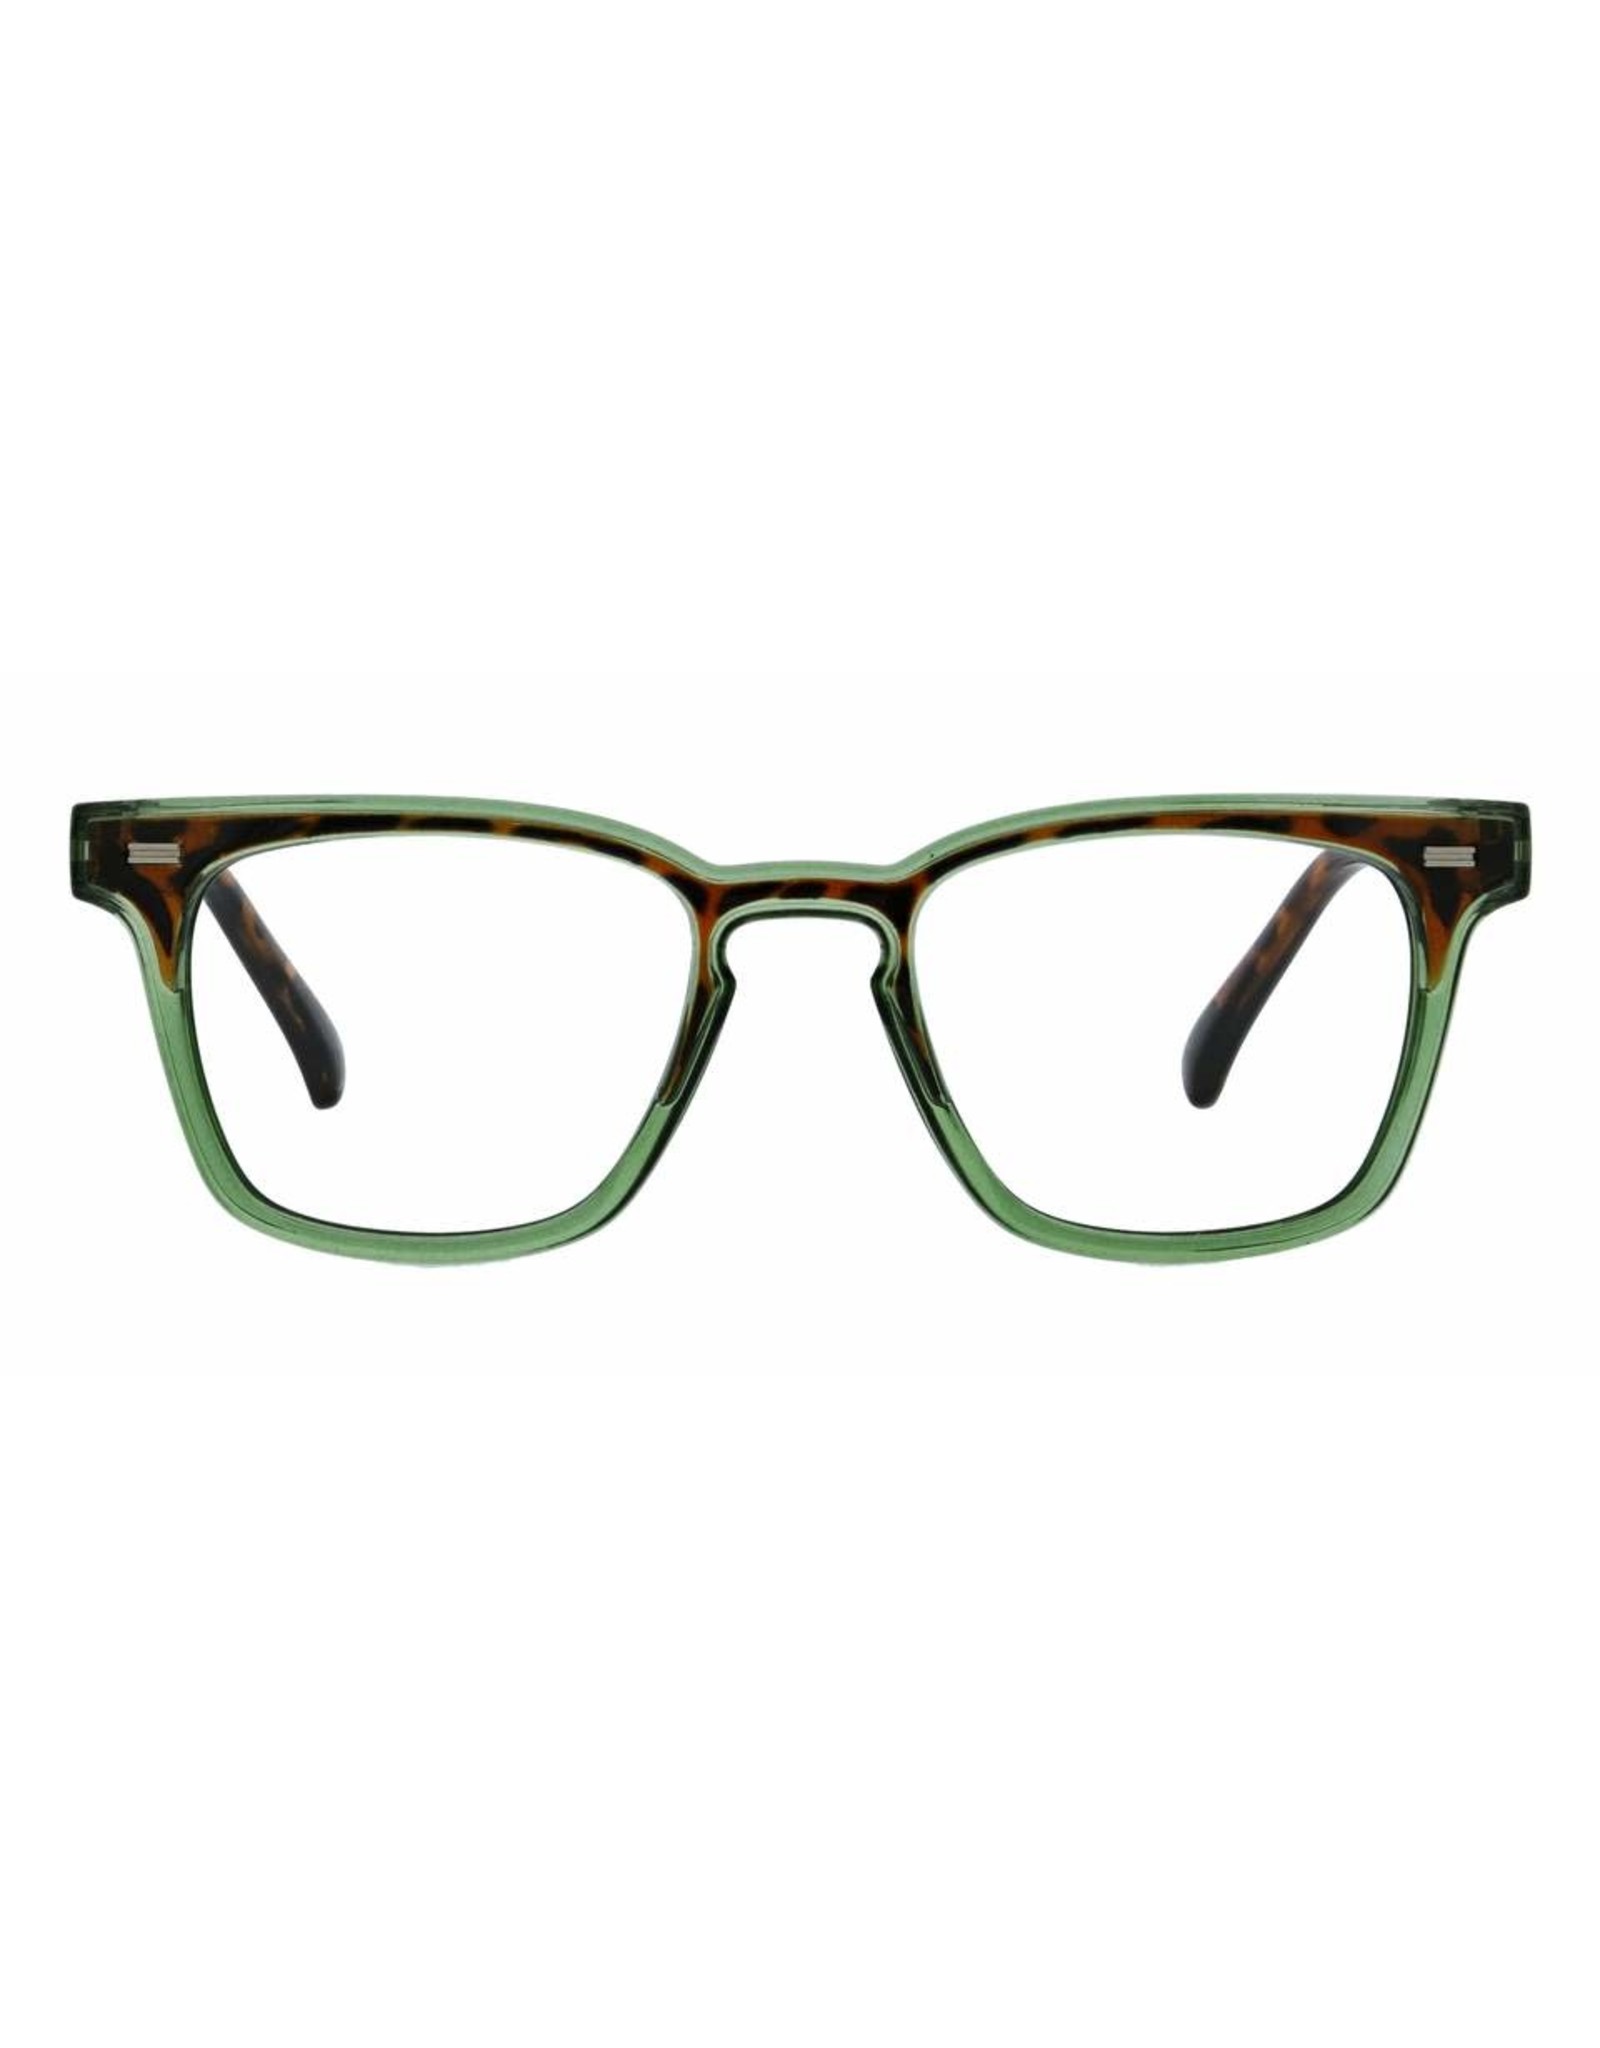 Reading Glasses Strut Green Tortoise +2.25